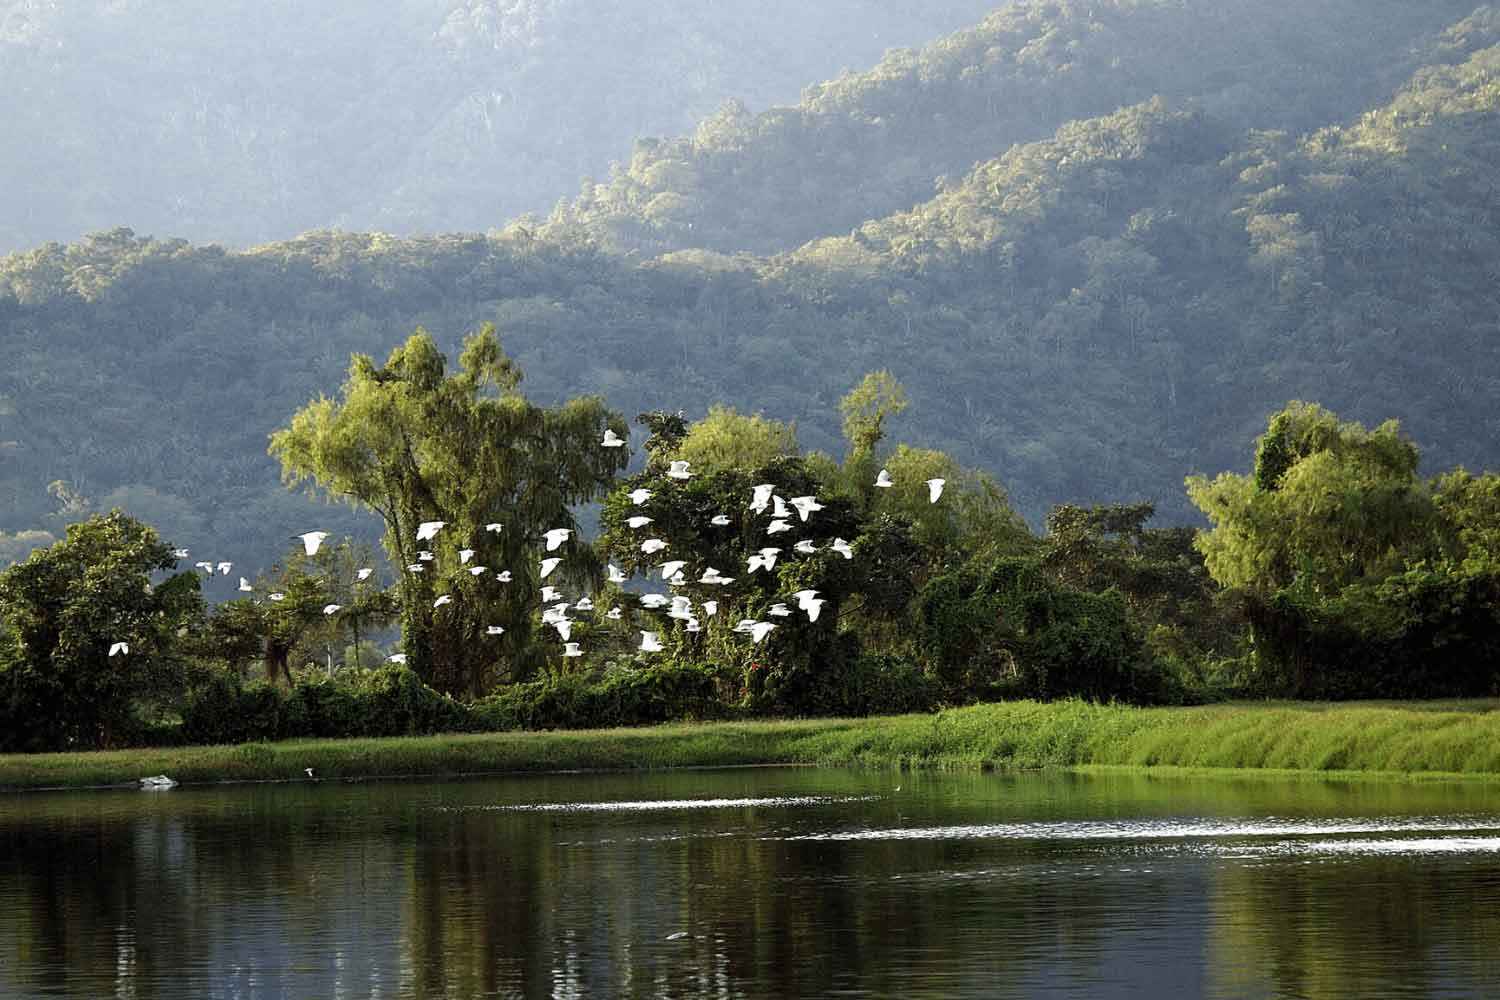 Des oiseaux volant au-dessus de l’eau au Biotop de Gildan au Honduras.